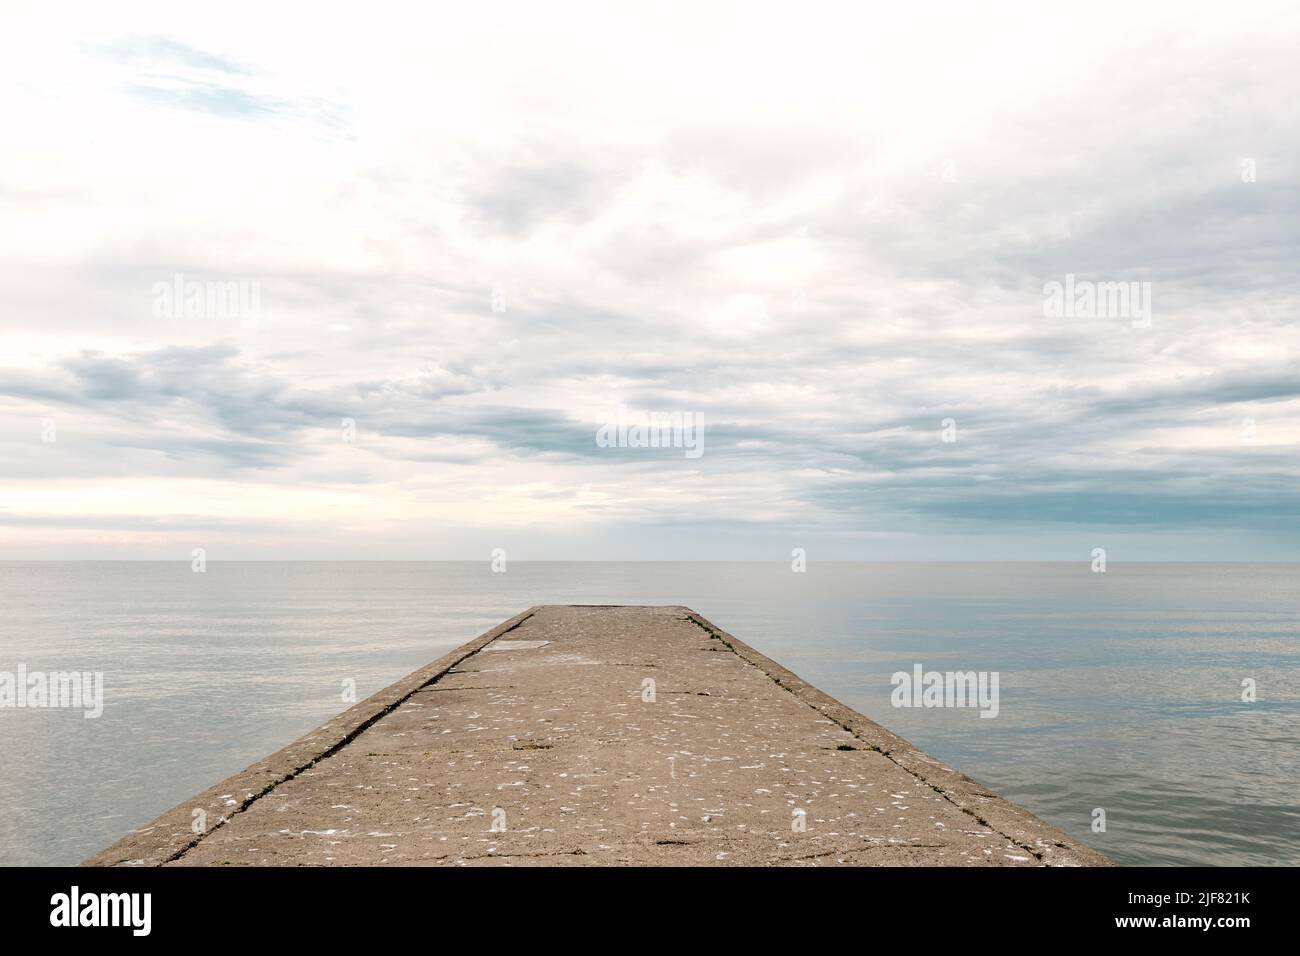 Muelle de hormigón vacío al mar con cielo dramático y aguas tranquilas, malecón industrial abandonado Foto de stock